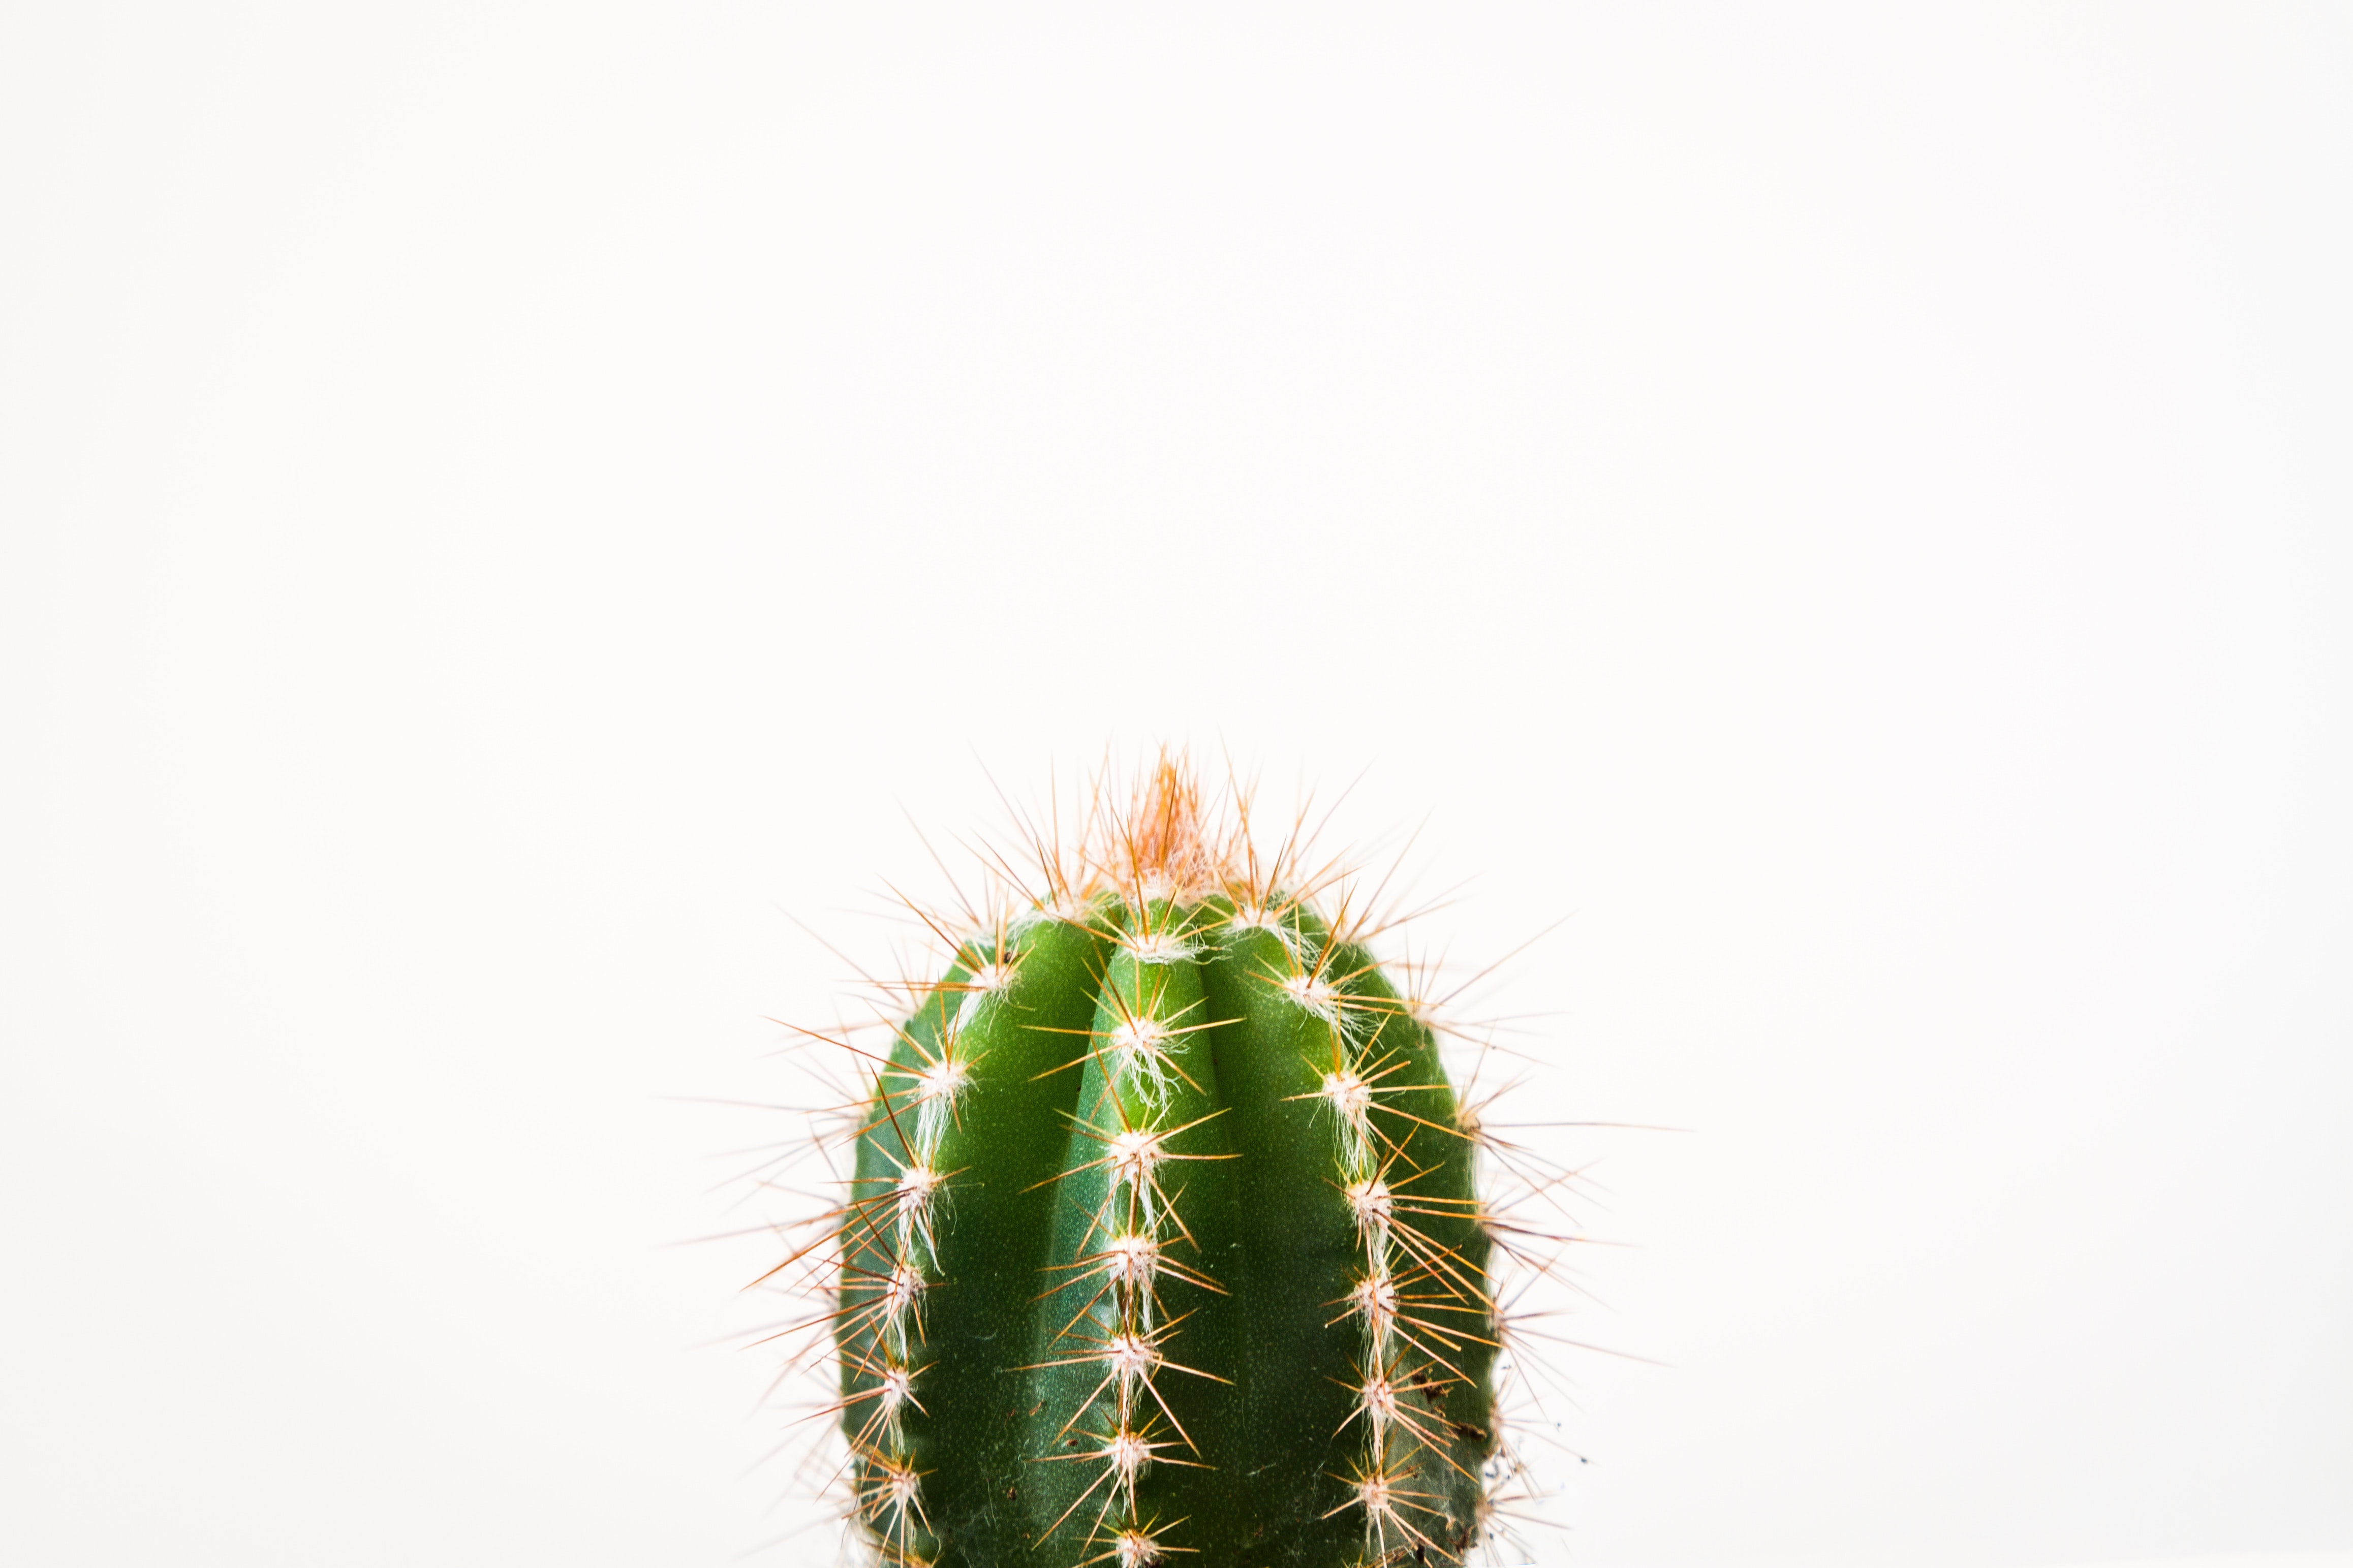 cactus wallpaper,cactus,plant,terrestrial plant,thorns, spines